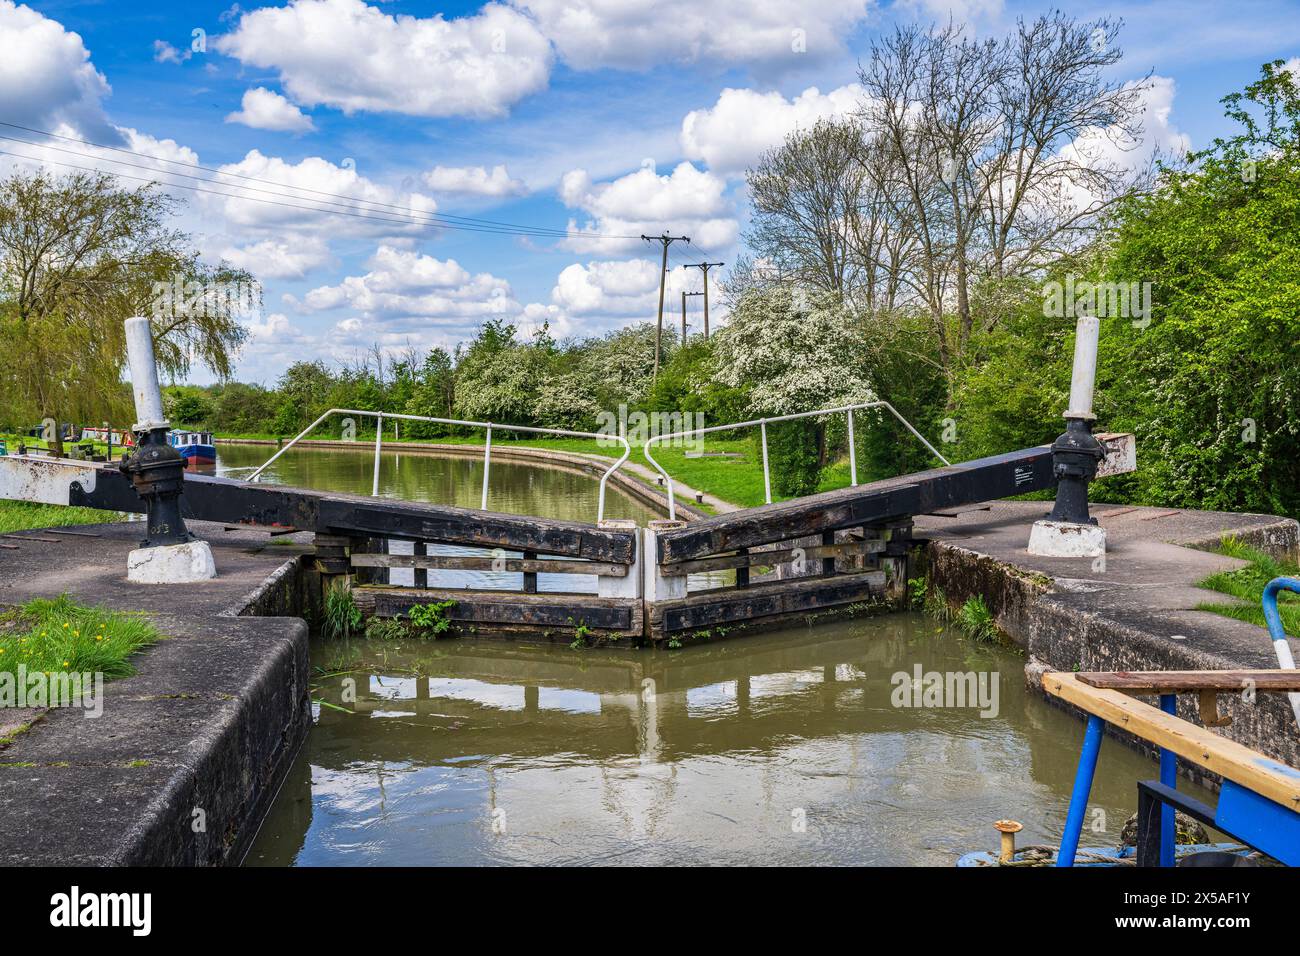 Grand Union Canal Main Line, Calcutt Locks, Inghilterra: Un motoscafo nella serratura superiore con i cancelli chiusi in una luminosa giornata estiva contro un cielo blu Foto Stock